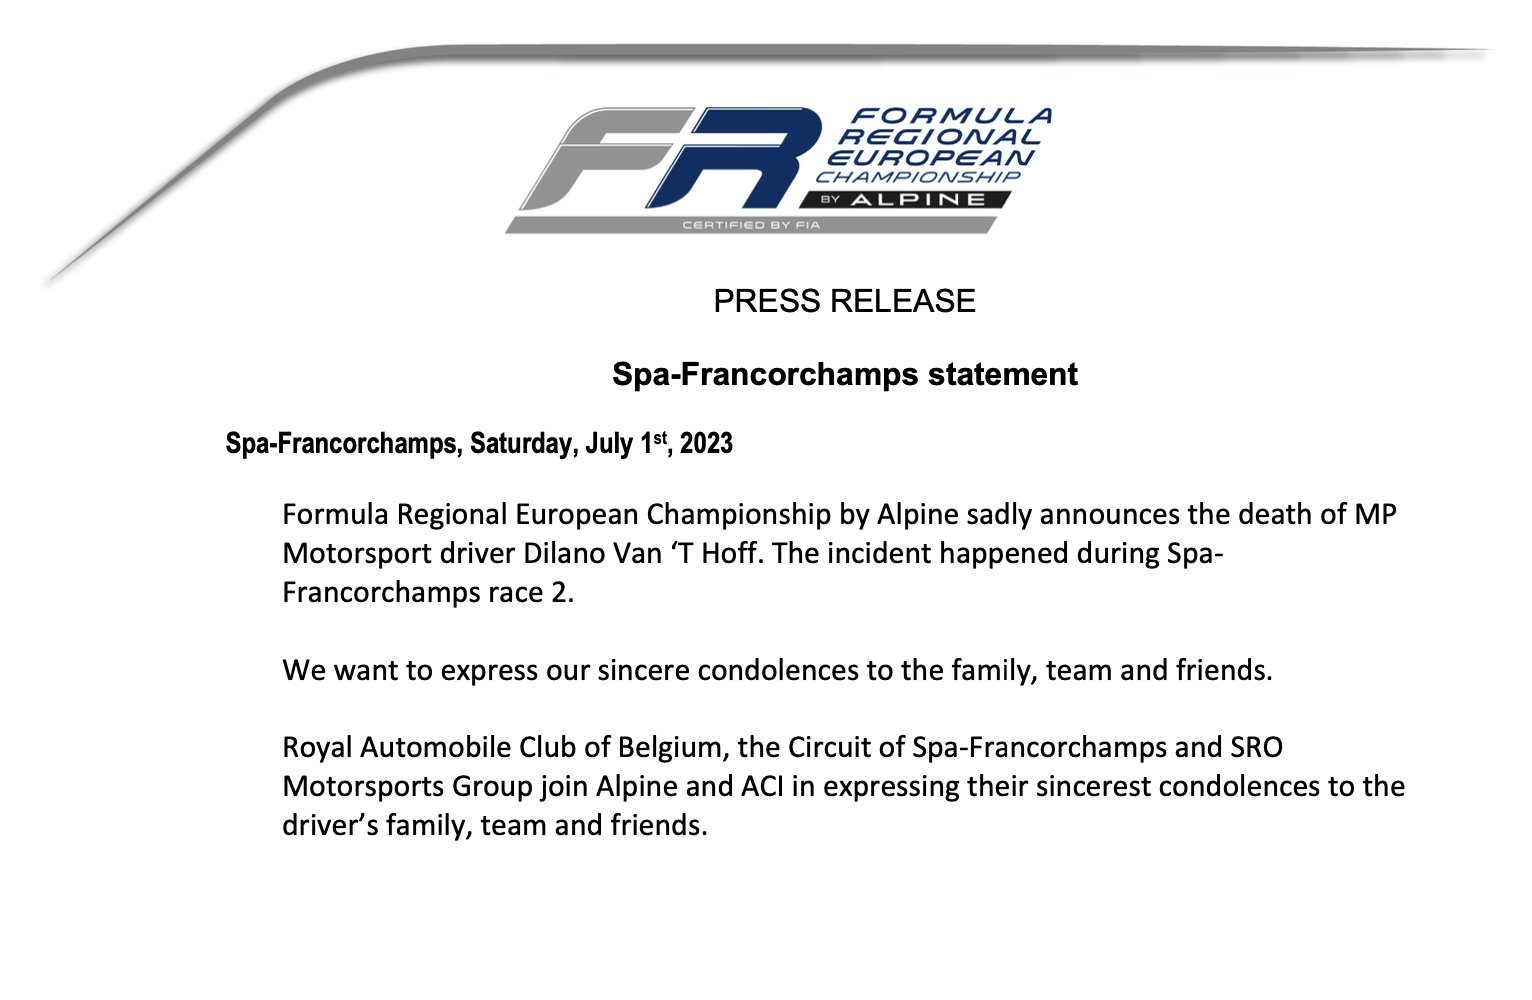 Dilano Van't Hoff, piloto holandés de 18 años fallece tras un terrible accidente en Spa Francorchamps